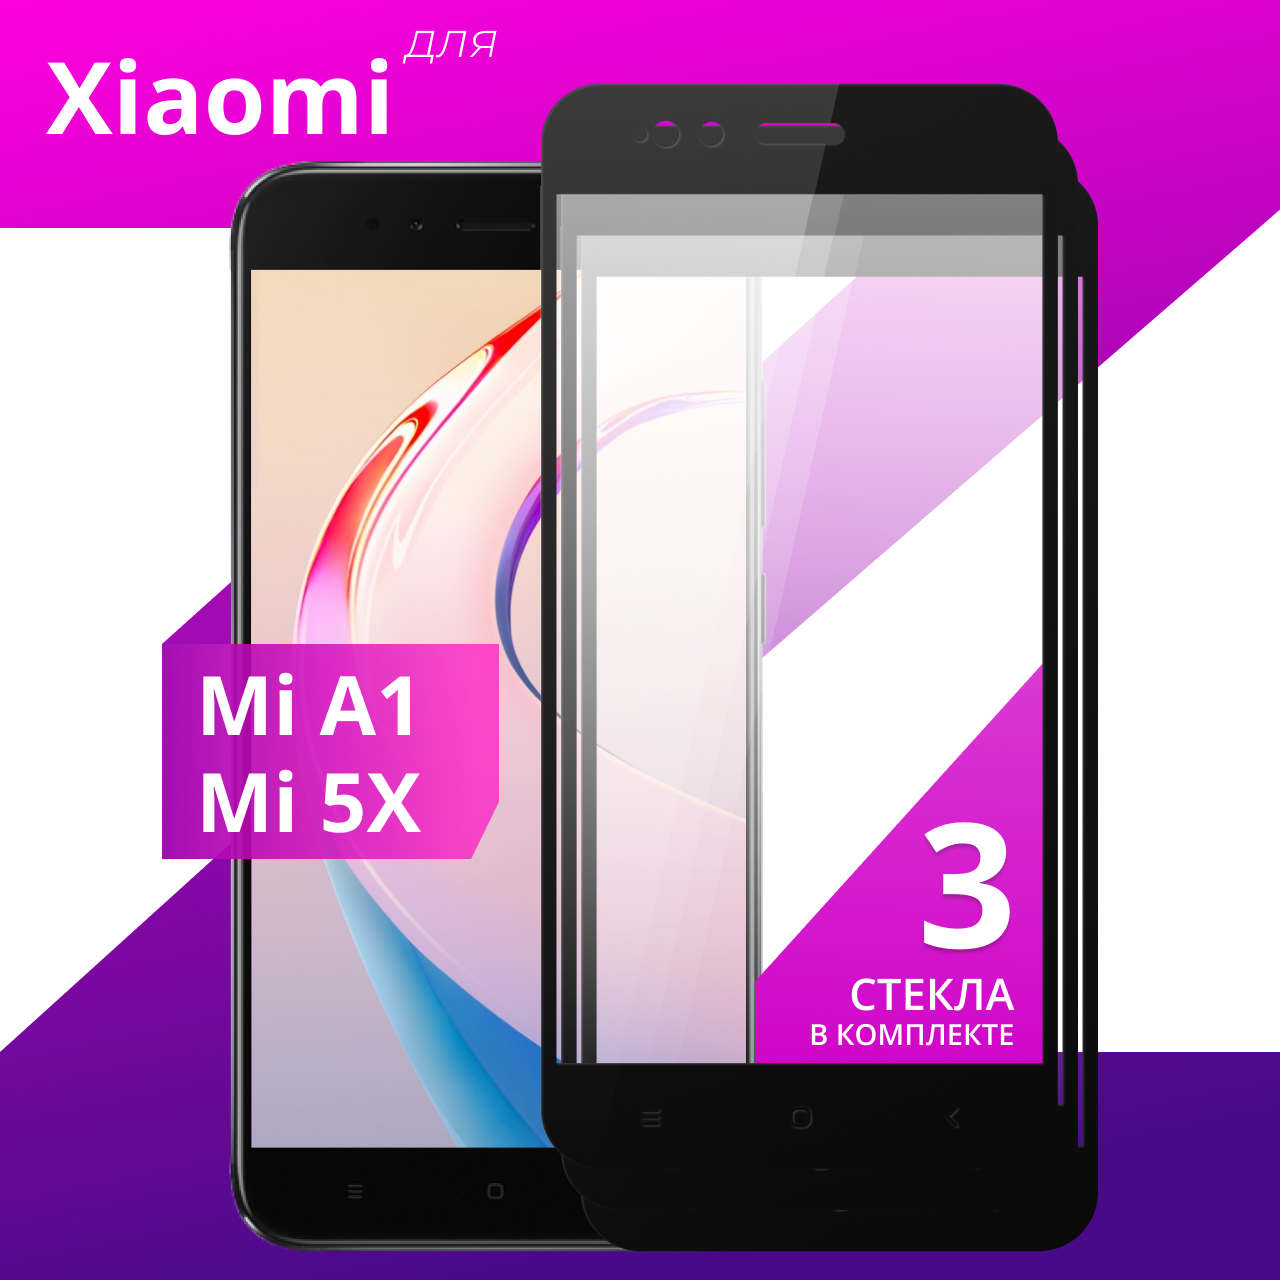 Комплект 3 шт. Защитное противоударное стекло для телефона Xiaomi Mi A1 и Xiaomi Mi 5X / Глянцевое стекло с олеофобным покрытием на смартфон Сяоми Ми А1 и Сяоми Ми 5Х